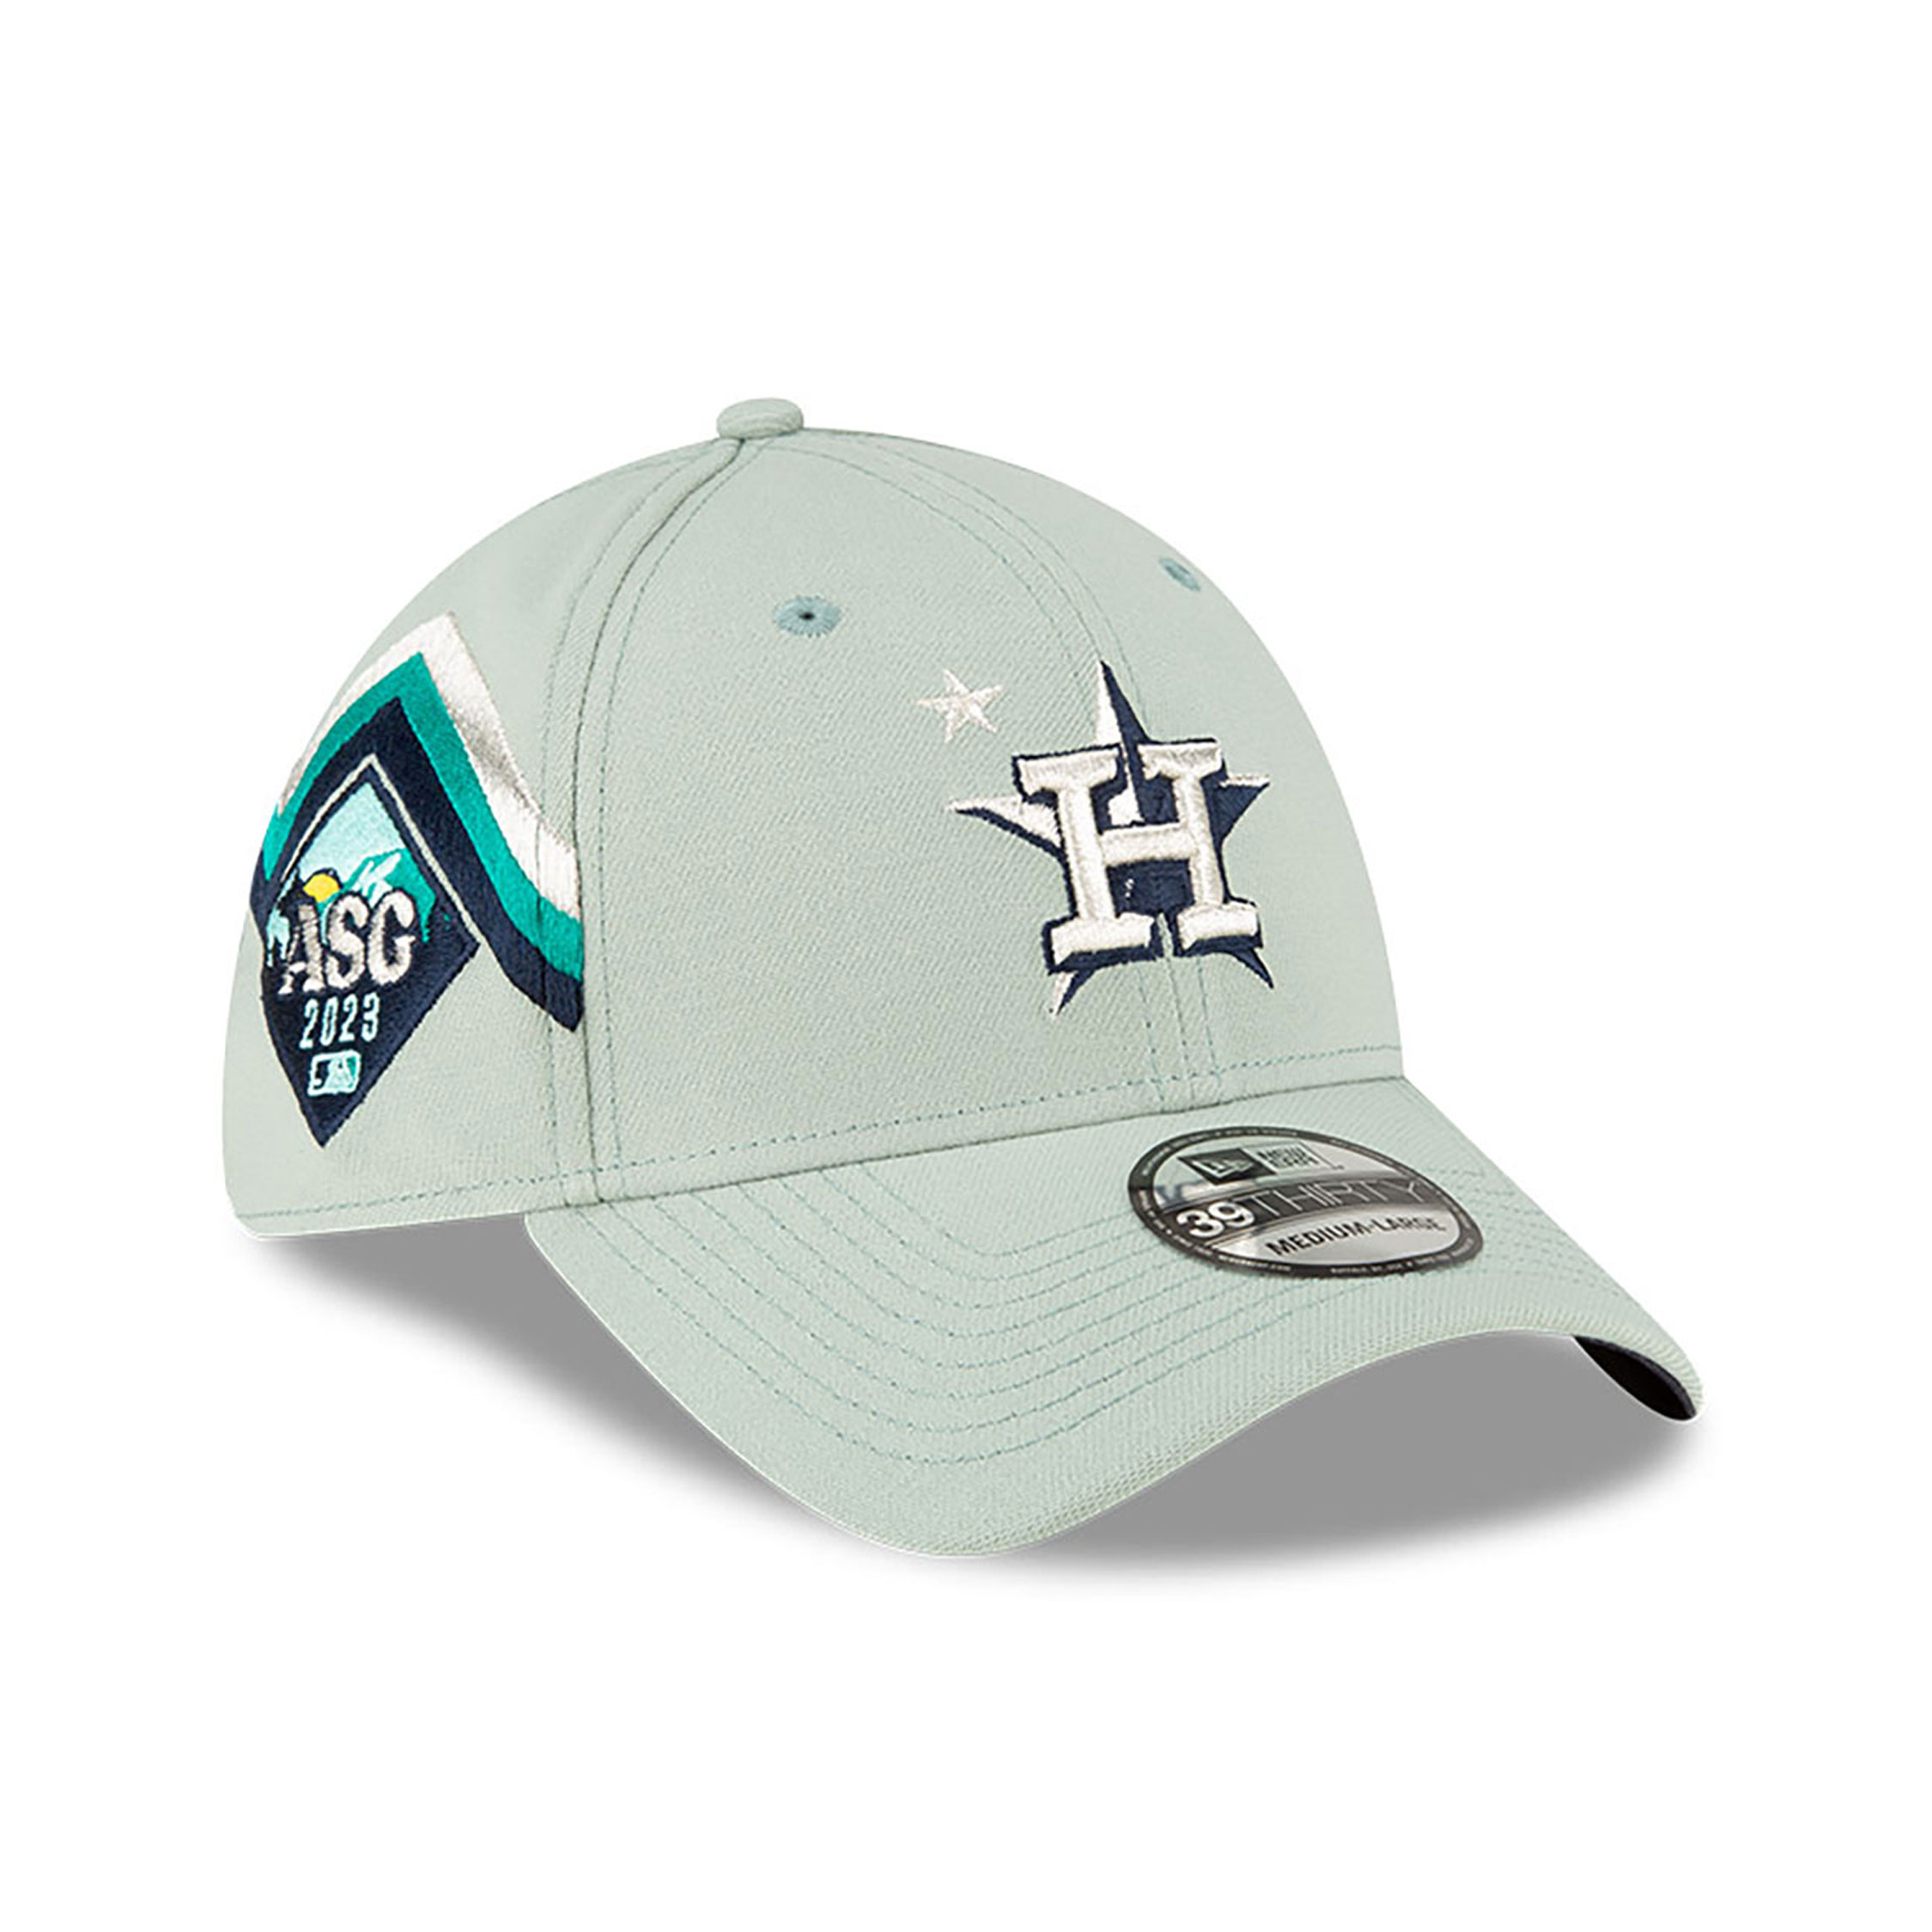 New Era Houston Astros Navy MLB Team Classic 39THIRTY Flex Hat